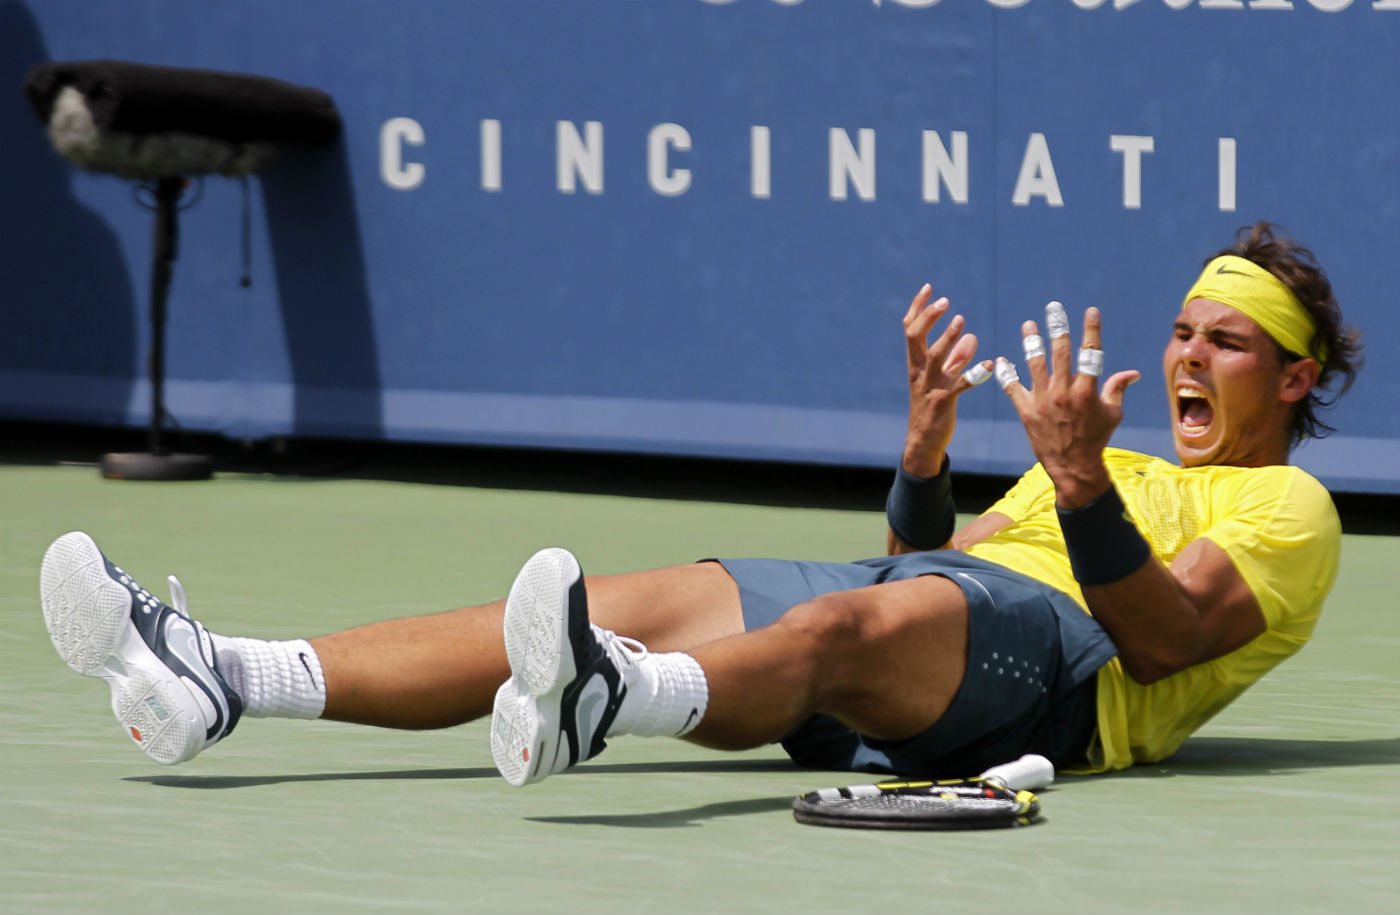 L'ultima - incerottatissima - vittoria di Nadal in un Masters 1000 su cemento.